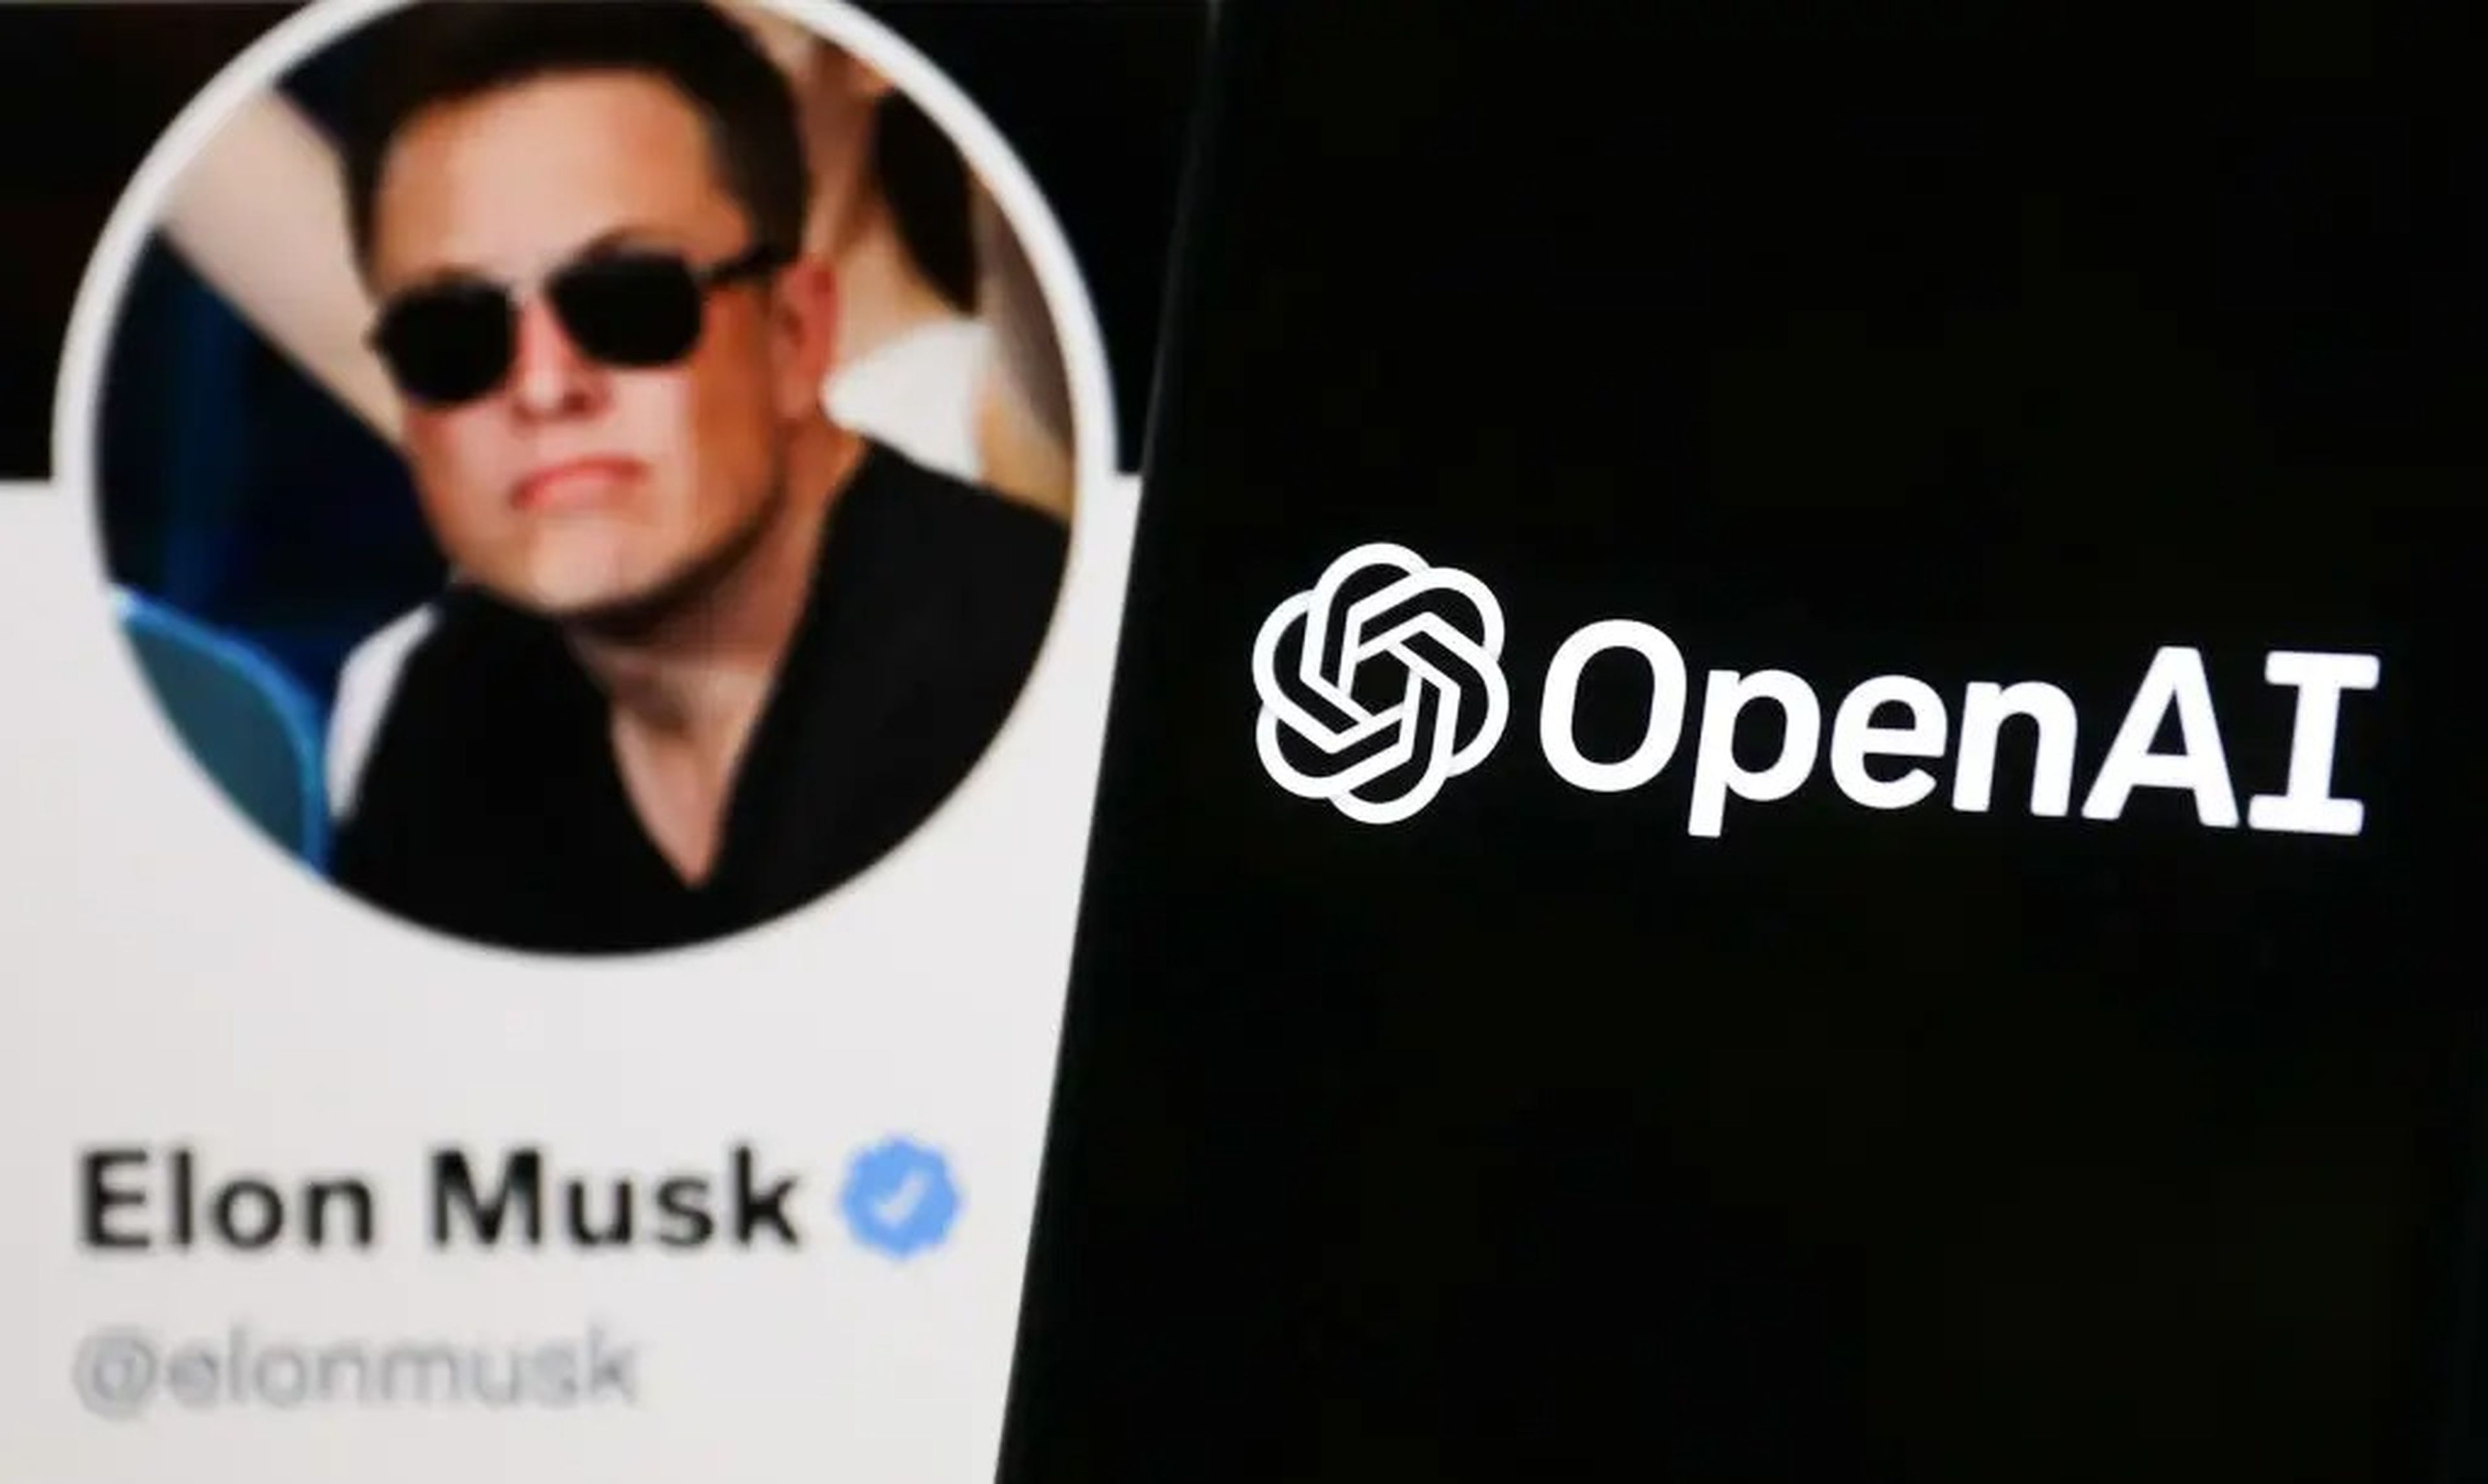 El logo de OpenAI junto a la foto de perfil de Elon Musk en Twitter.